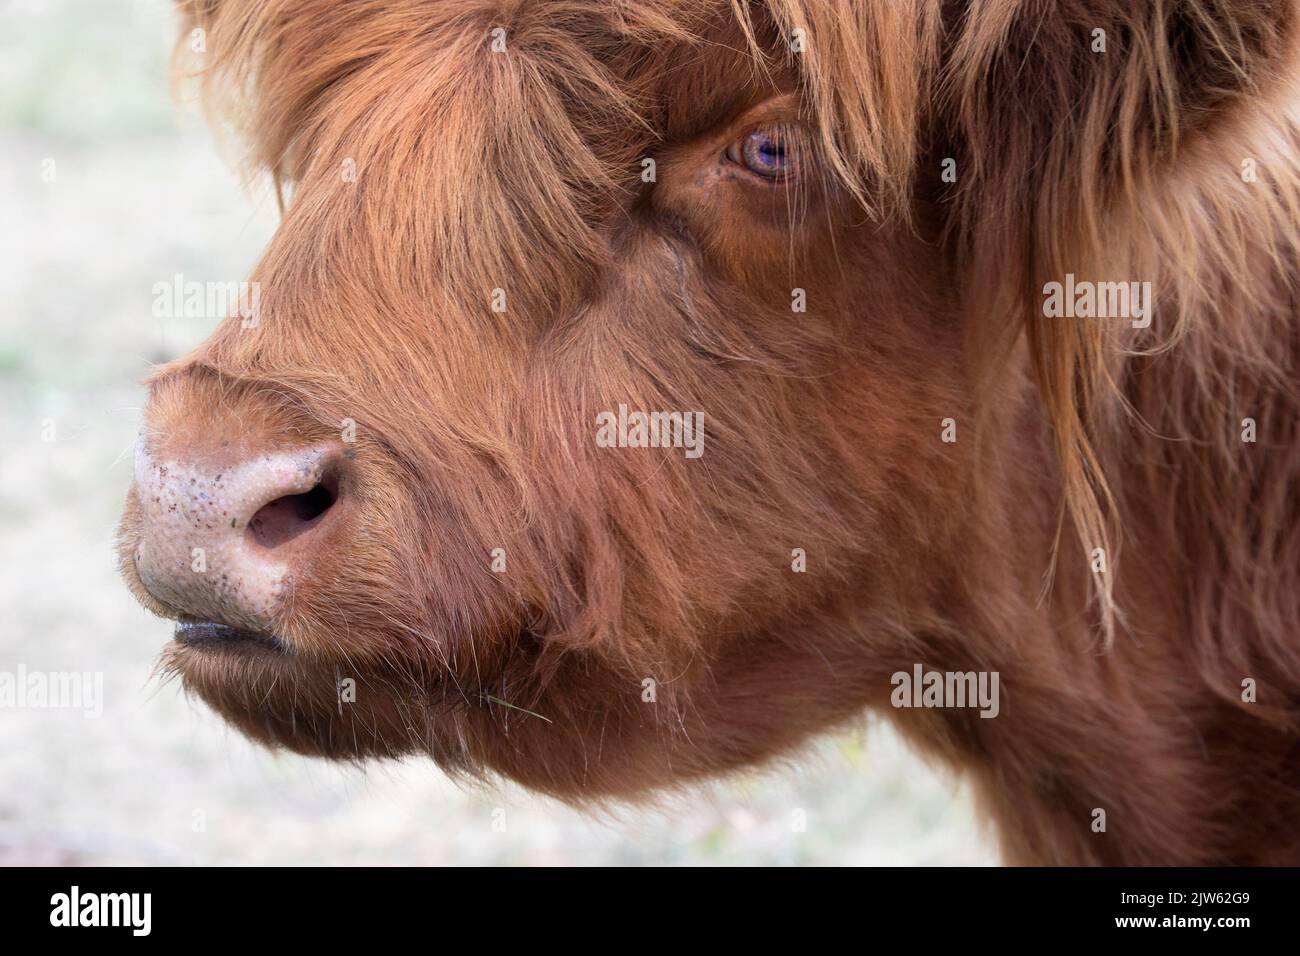 Vaca Highland, primer plano de cara, ojo y nariz de vaca roja Foto de stock